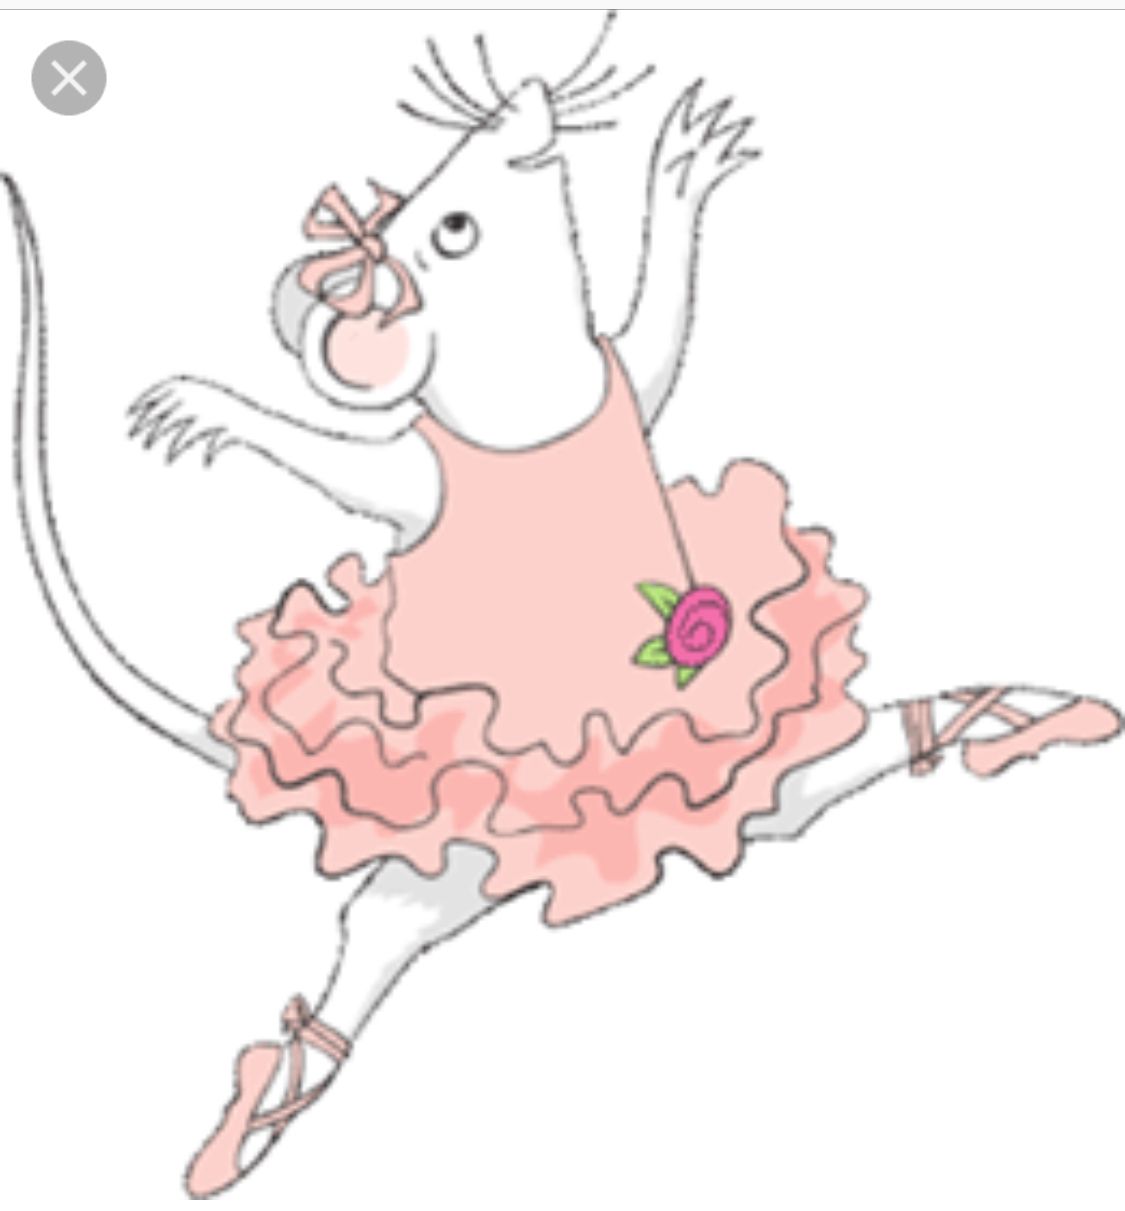 ballerina clipart mouse